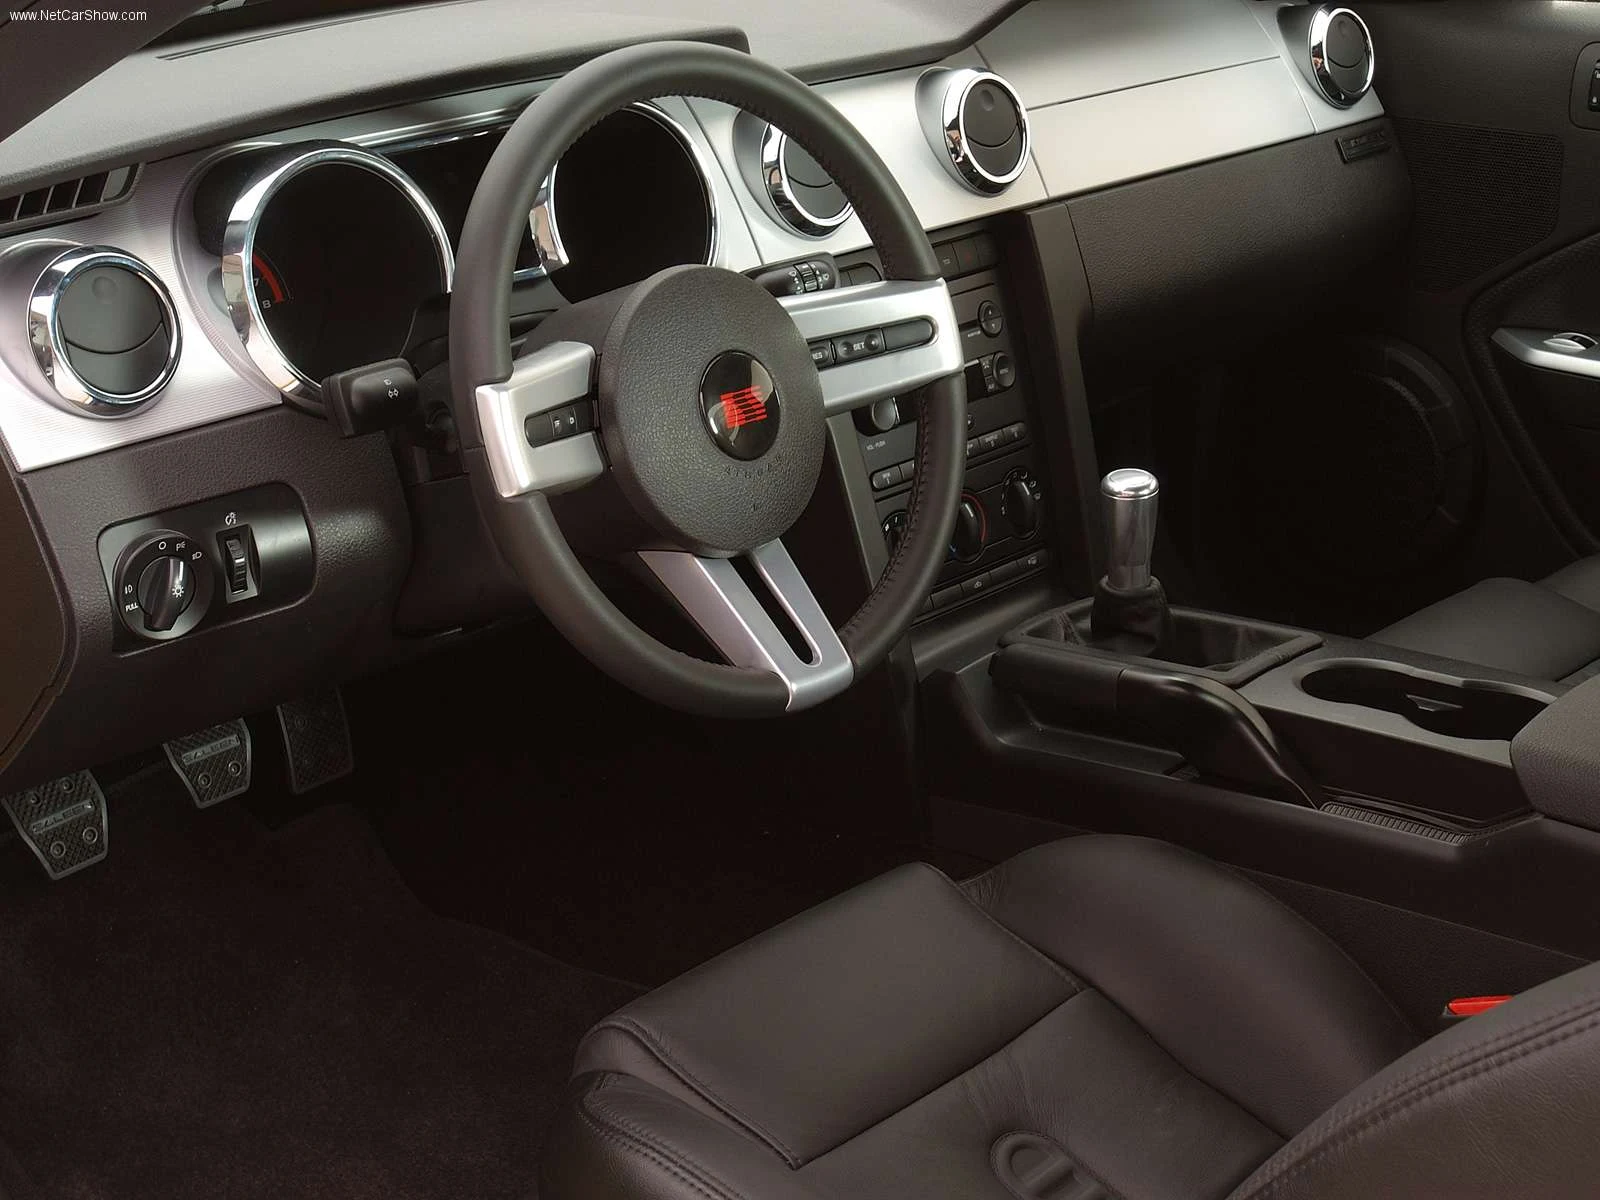 Hình ảnh xe ô tô Saleen Ford Mustang S281 3 Valve 2005 & nội ngoại thất